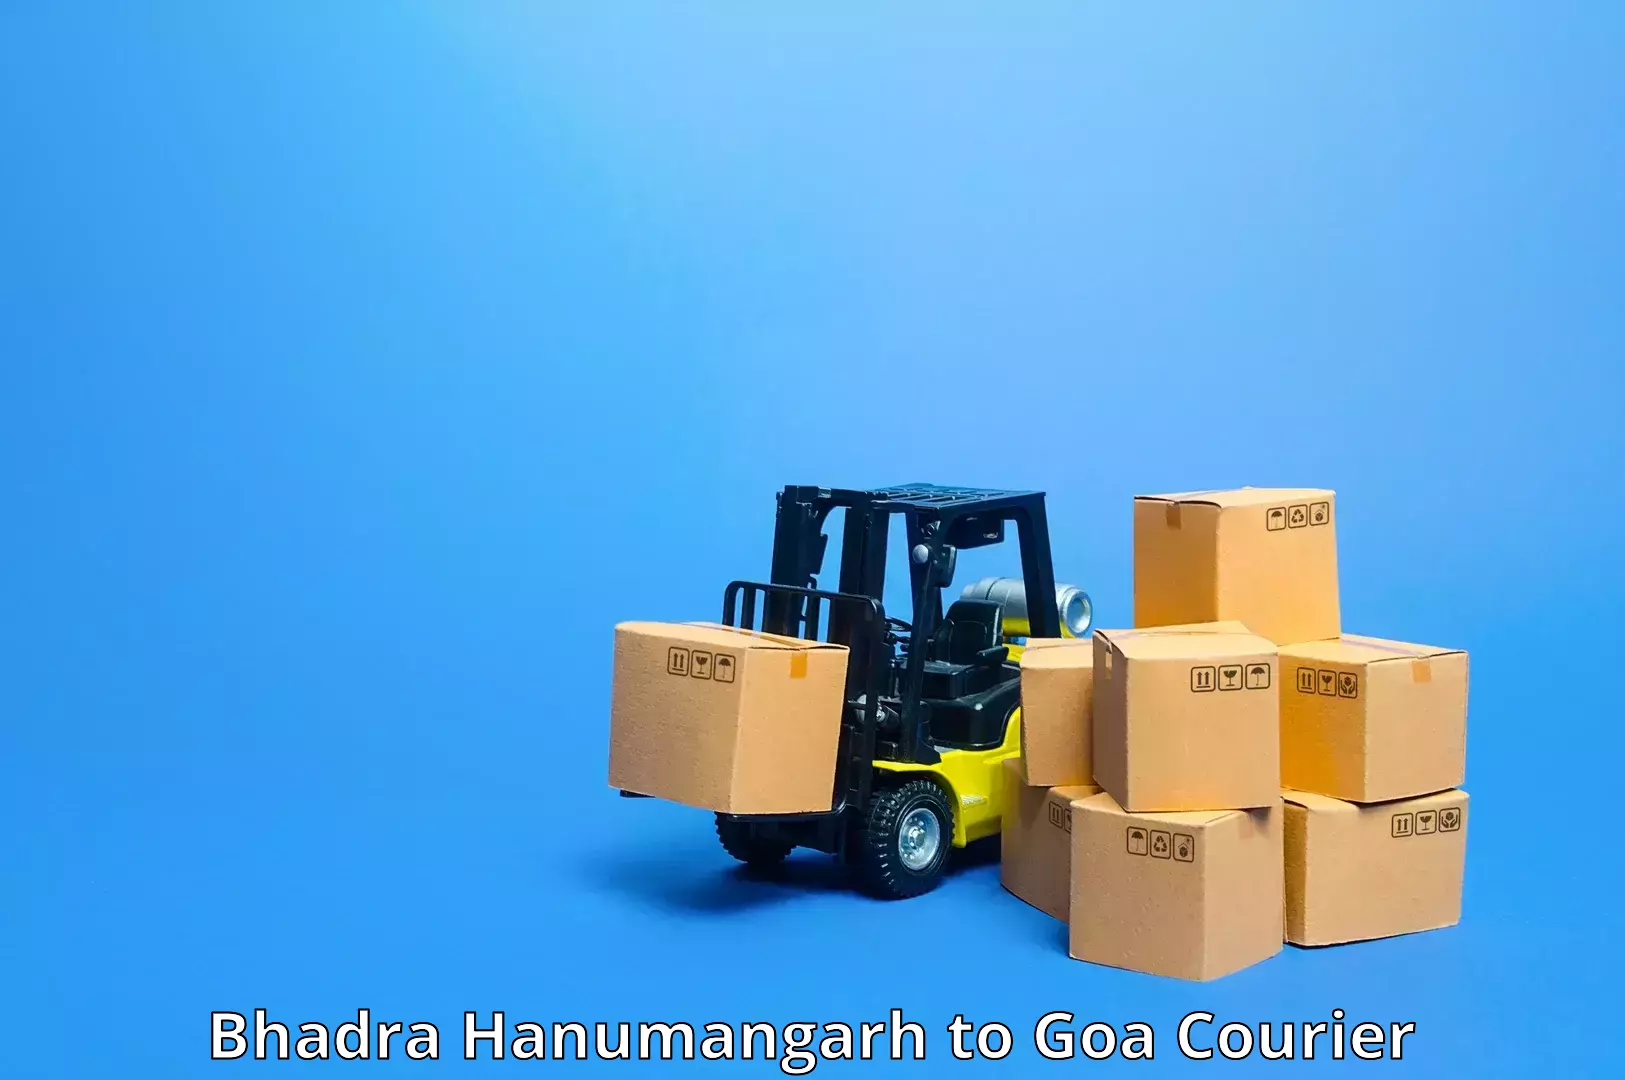 Nationwide shipping capabilities in Bhadra Hanumangarh to Panaji